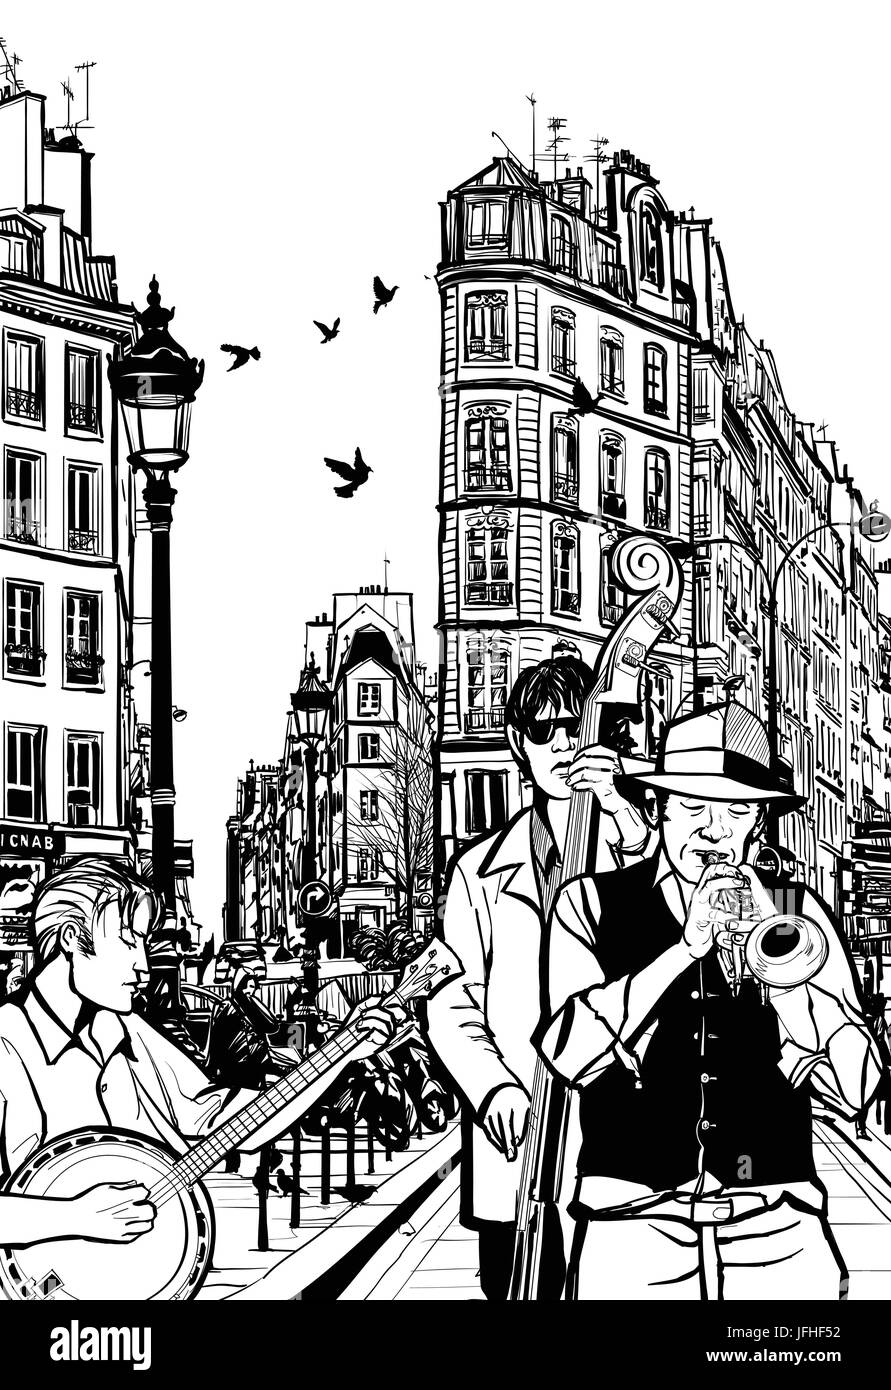 Jazz-Band in einer Straße von Paris - Vektor-Illustration Stock Vektor